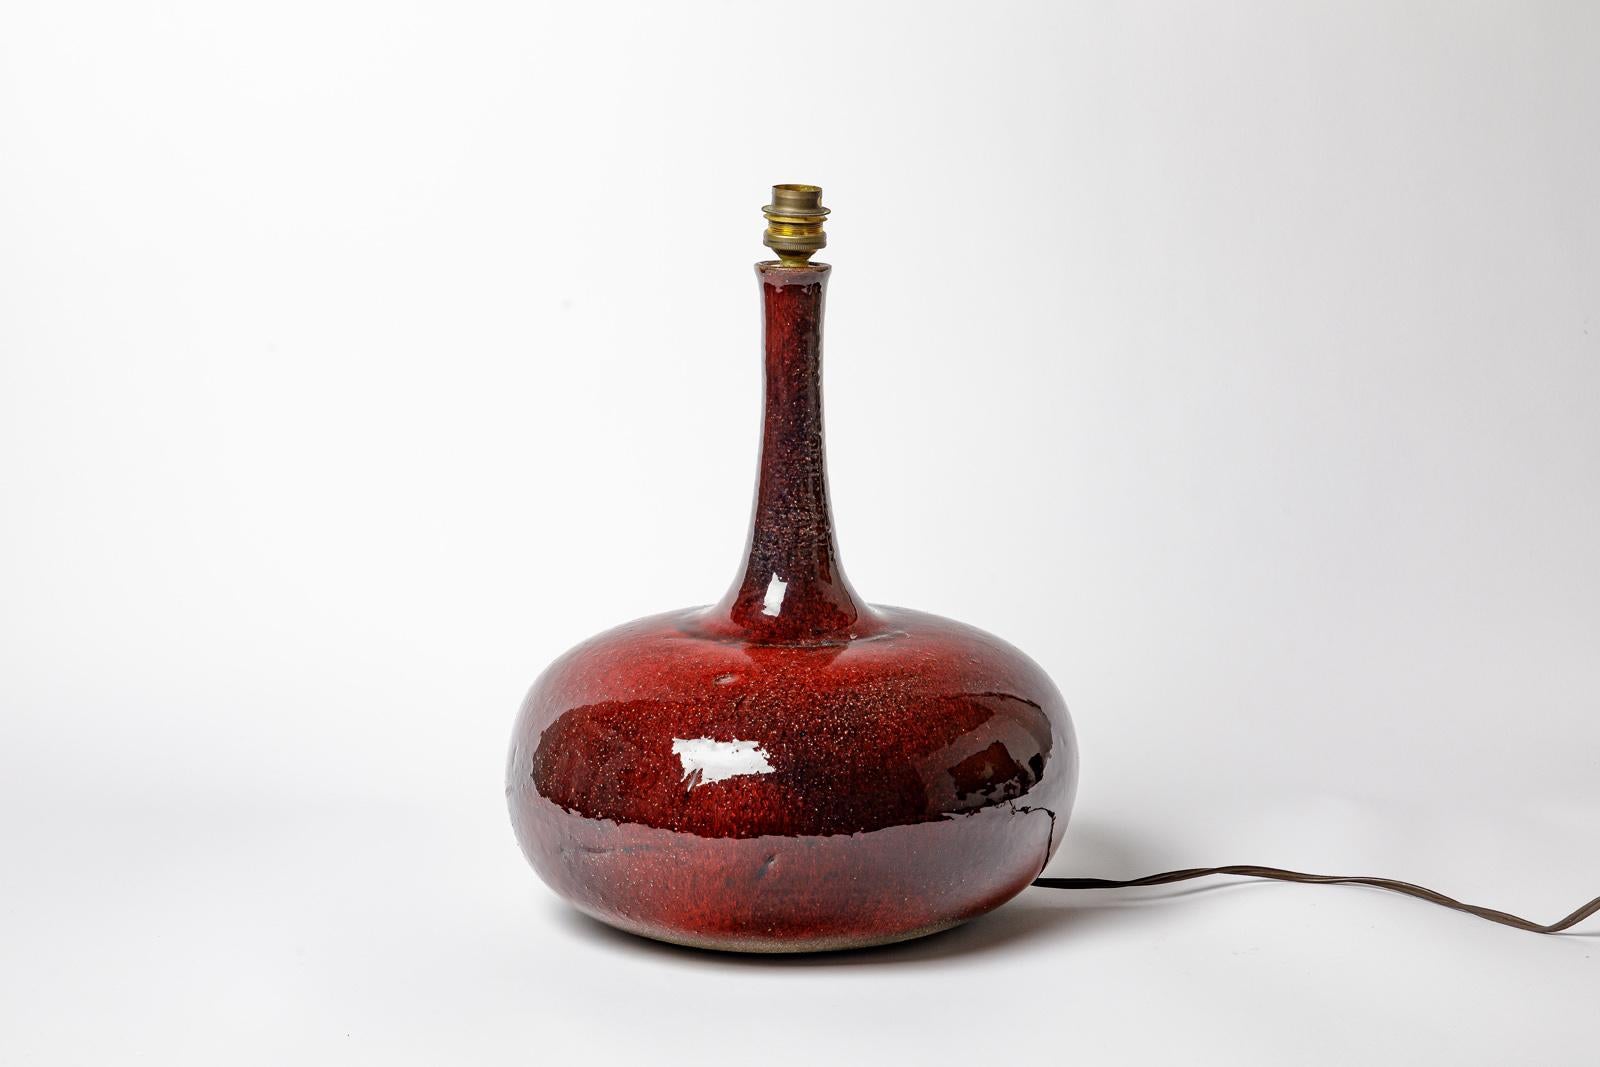 Nach dem Vorbild von Jacques und Dani Ruelland

Original Keramik-Tischlampe aus der Mitte des 20. Jahrhunderts

Realisiert um 1950

Original perfekter Zustand

Schöne rote Keramik Glasur Farbe mit Farben Effekte

Elektrische Anlage ist in